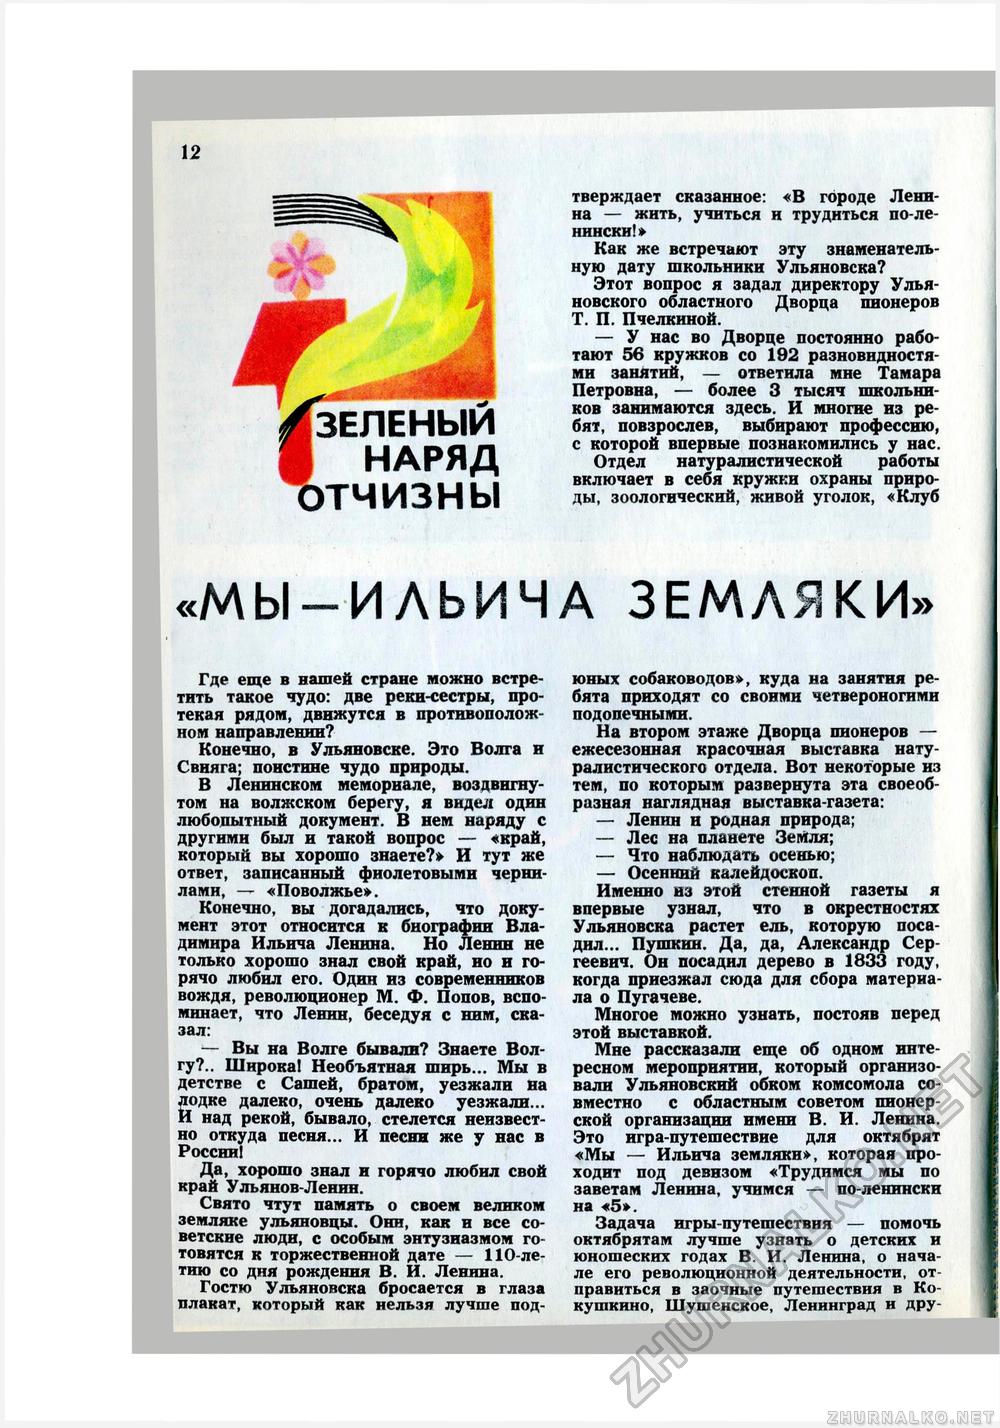   1979-08,  14